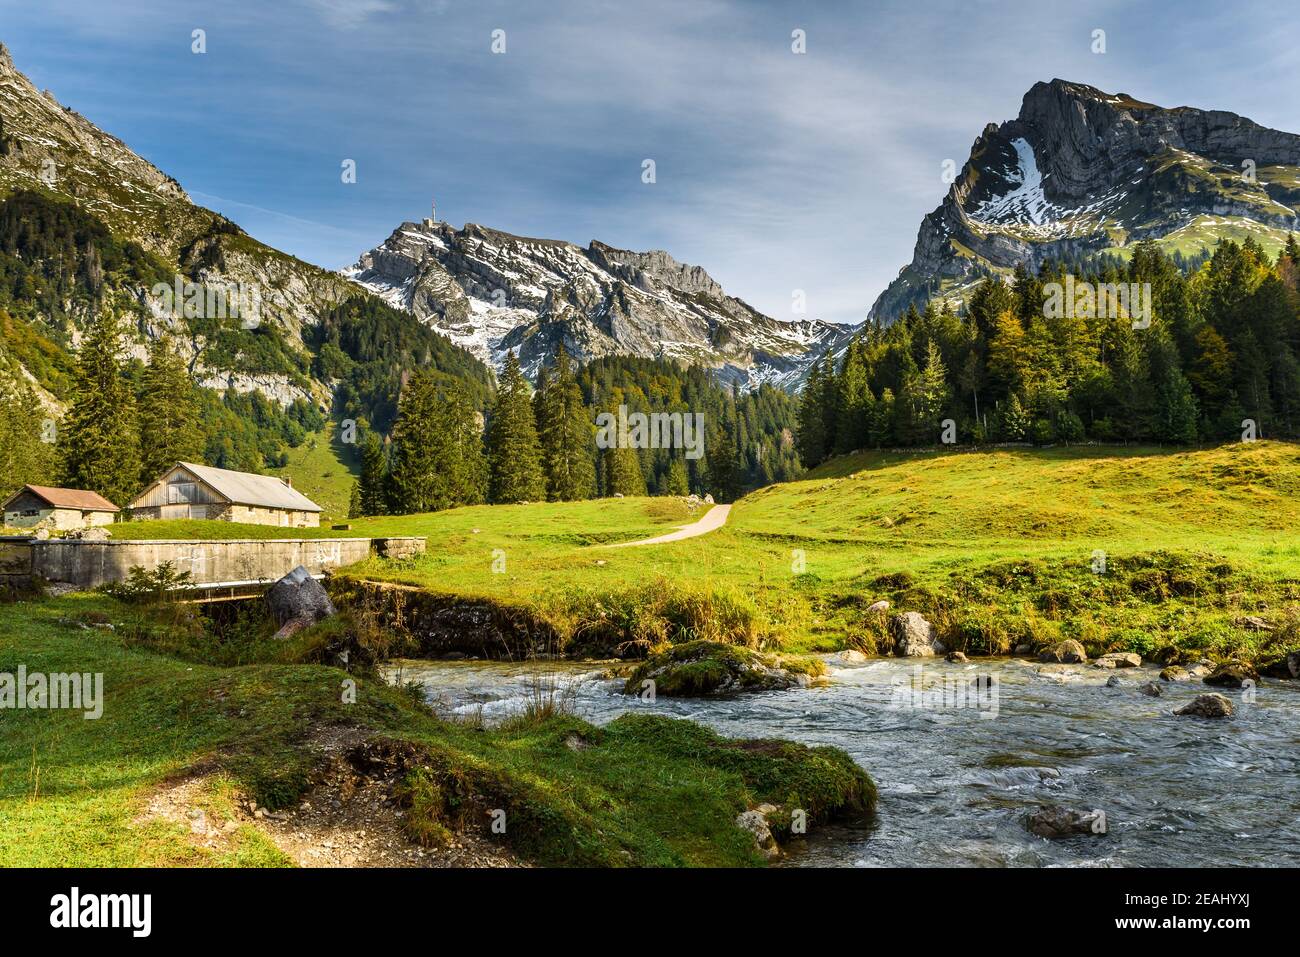 View of the Saentis and the Wildhuser Schafberg, Toggenburg, Canton St. Gallen, Switzerland Stock Photo